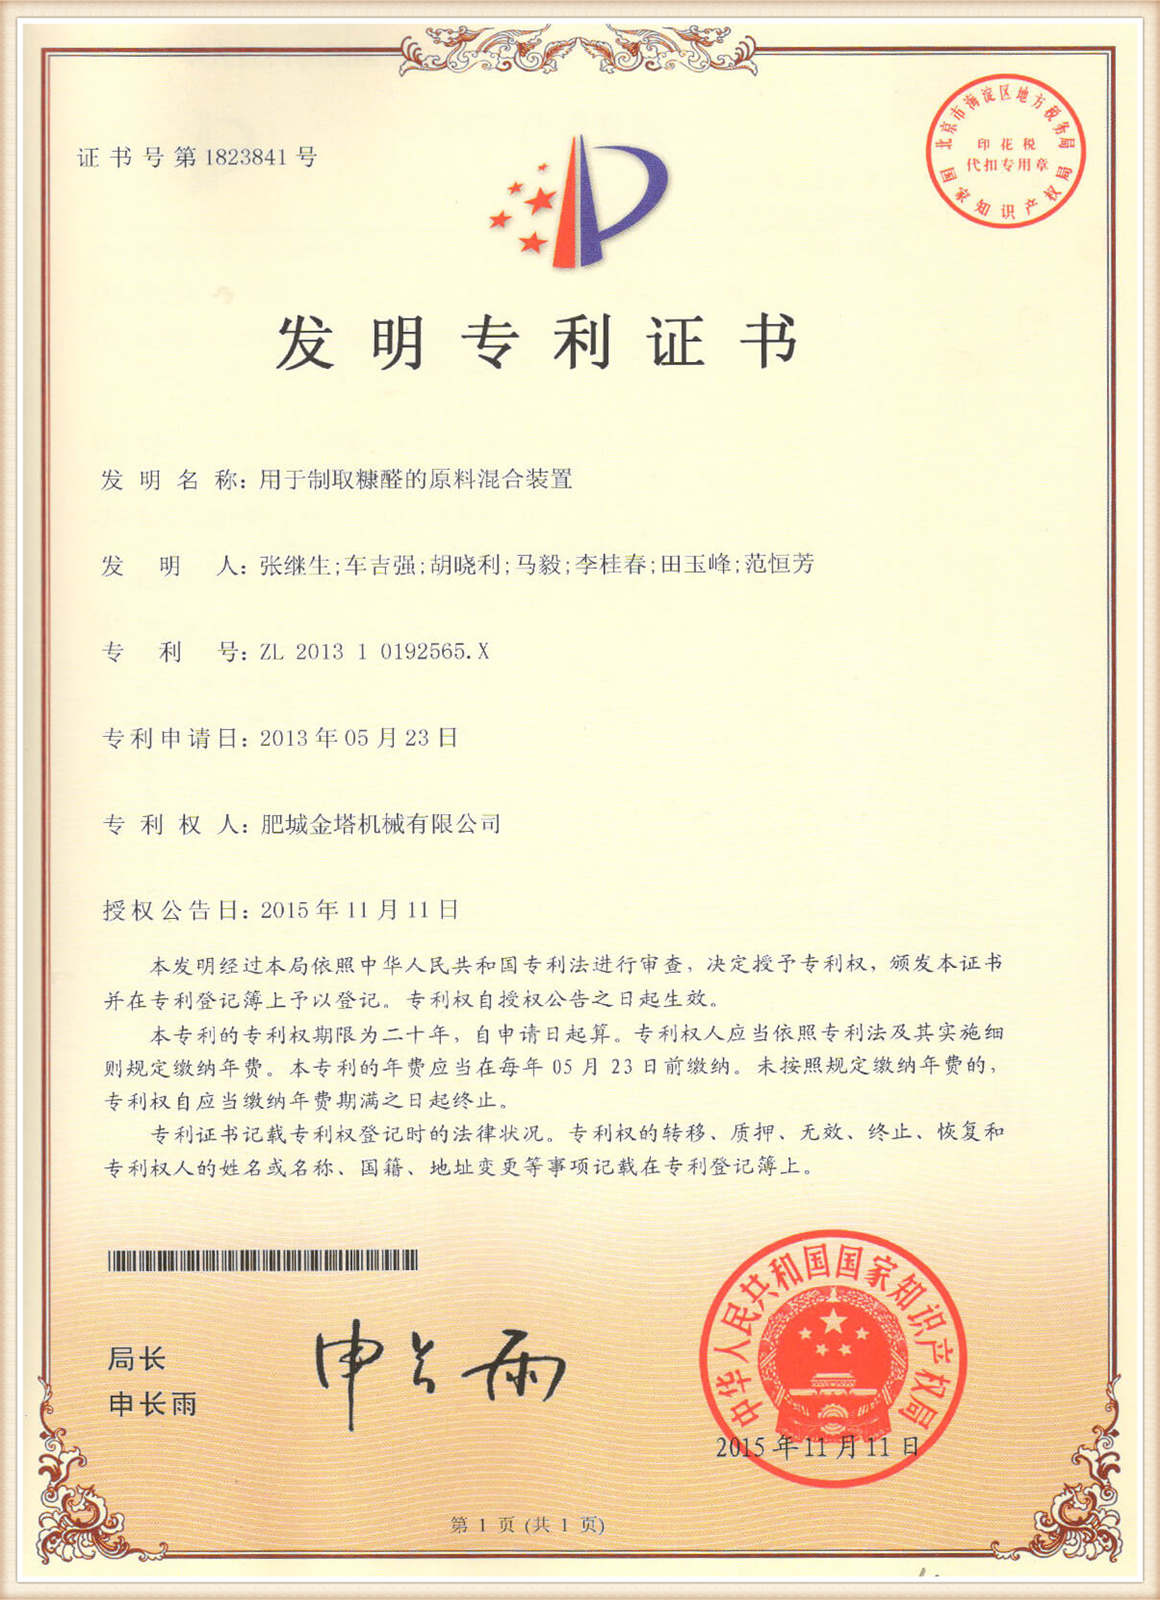 certifikacija11